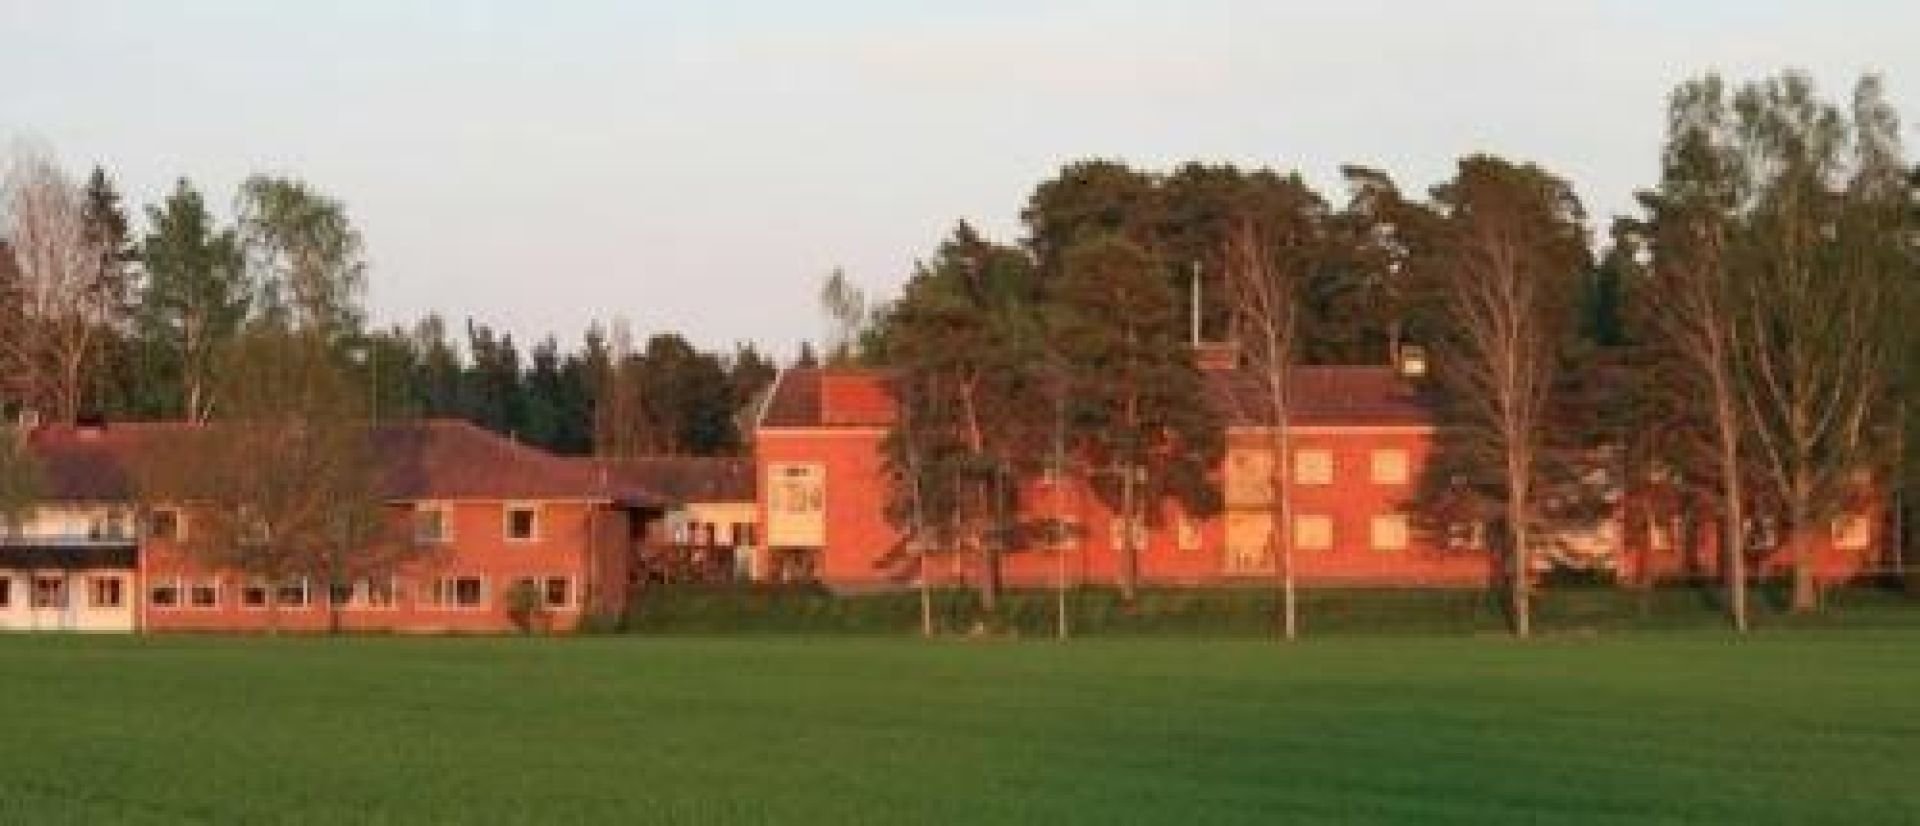 Hostel Svedjegården